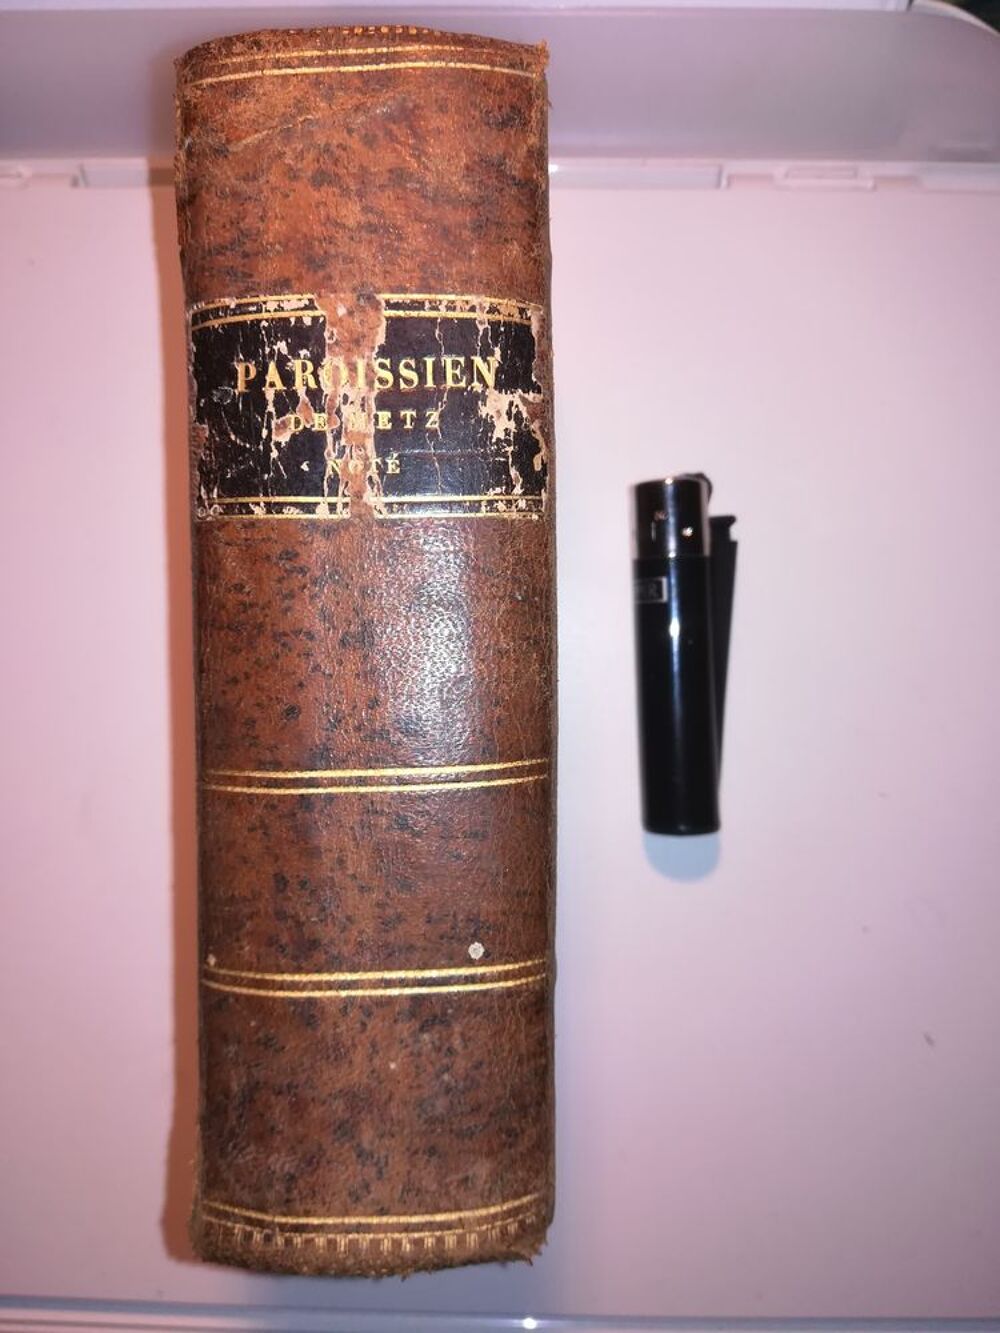 PAROISSIEN ROMAIN TRES COMPLET NOTE EN PLAIN CHANT 1874 Livres et BD